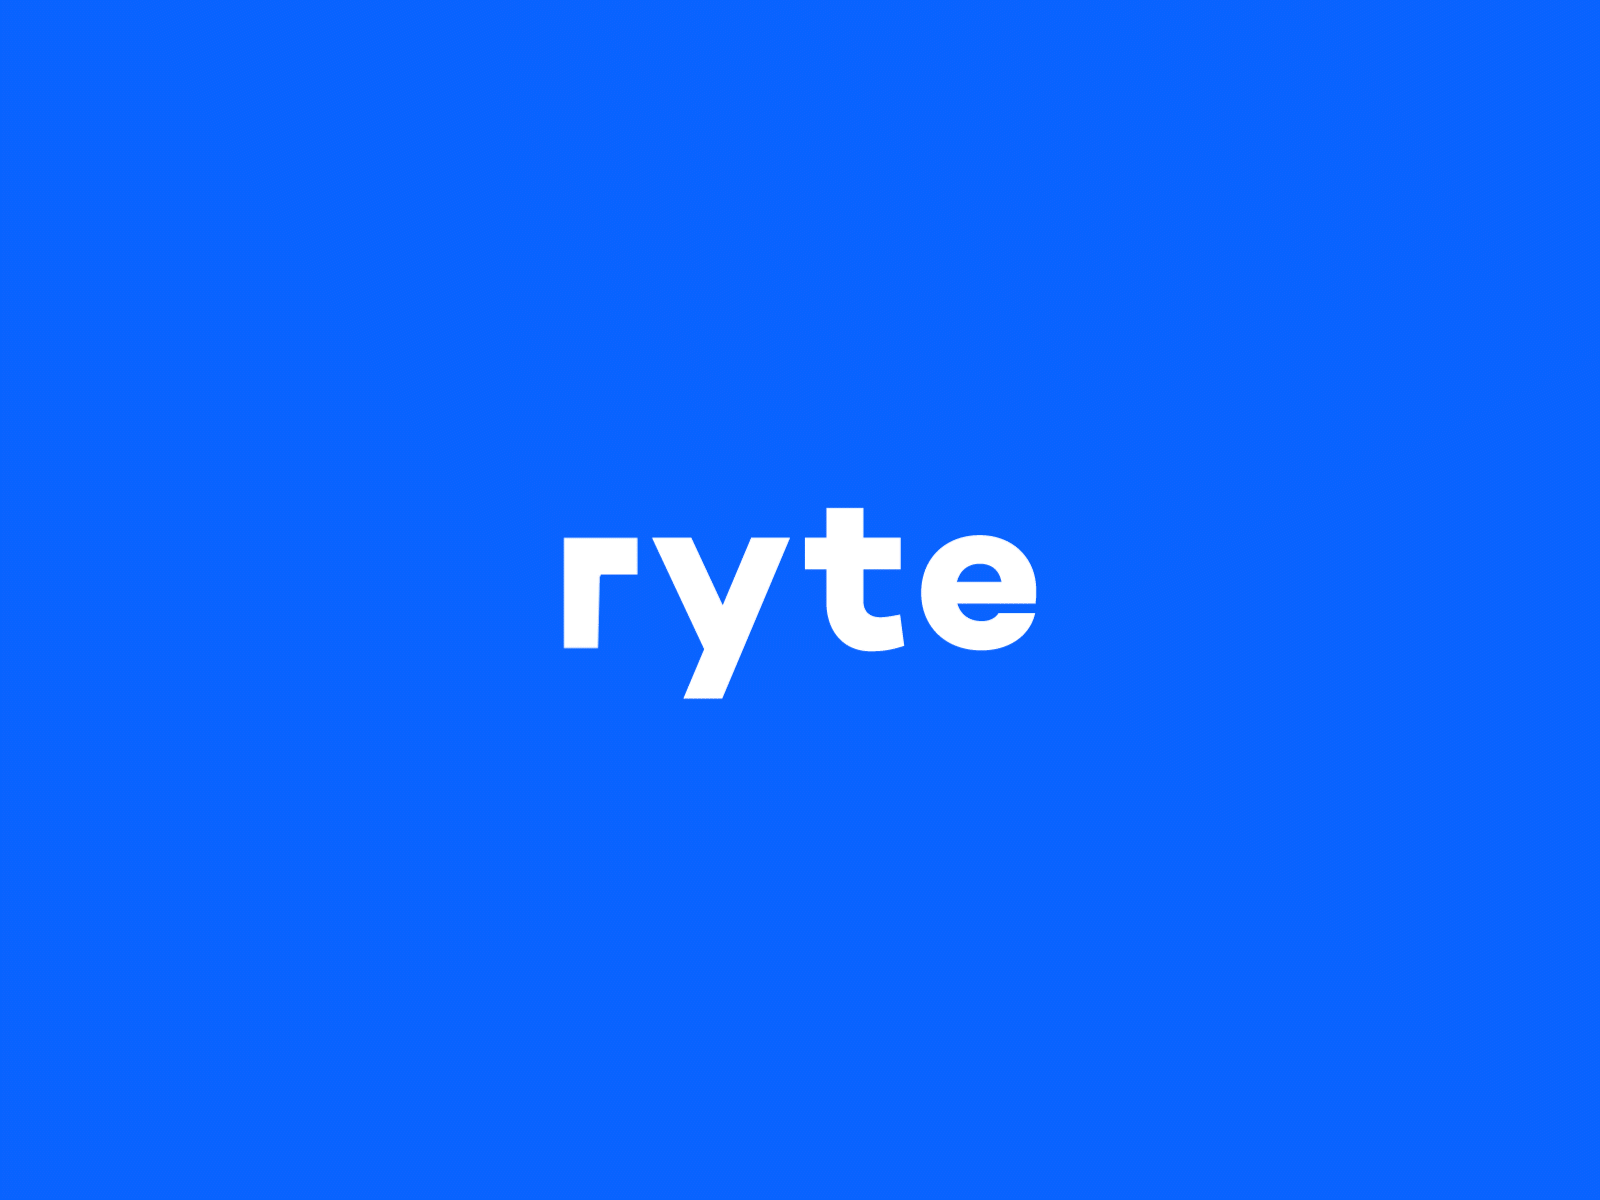 Ryte | Identity redesign